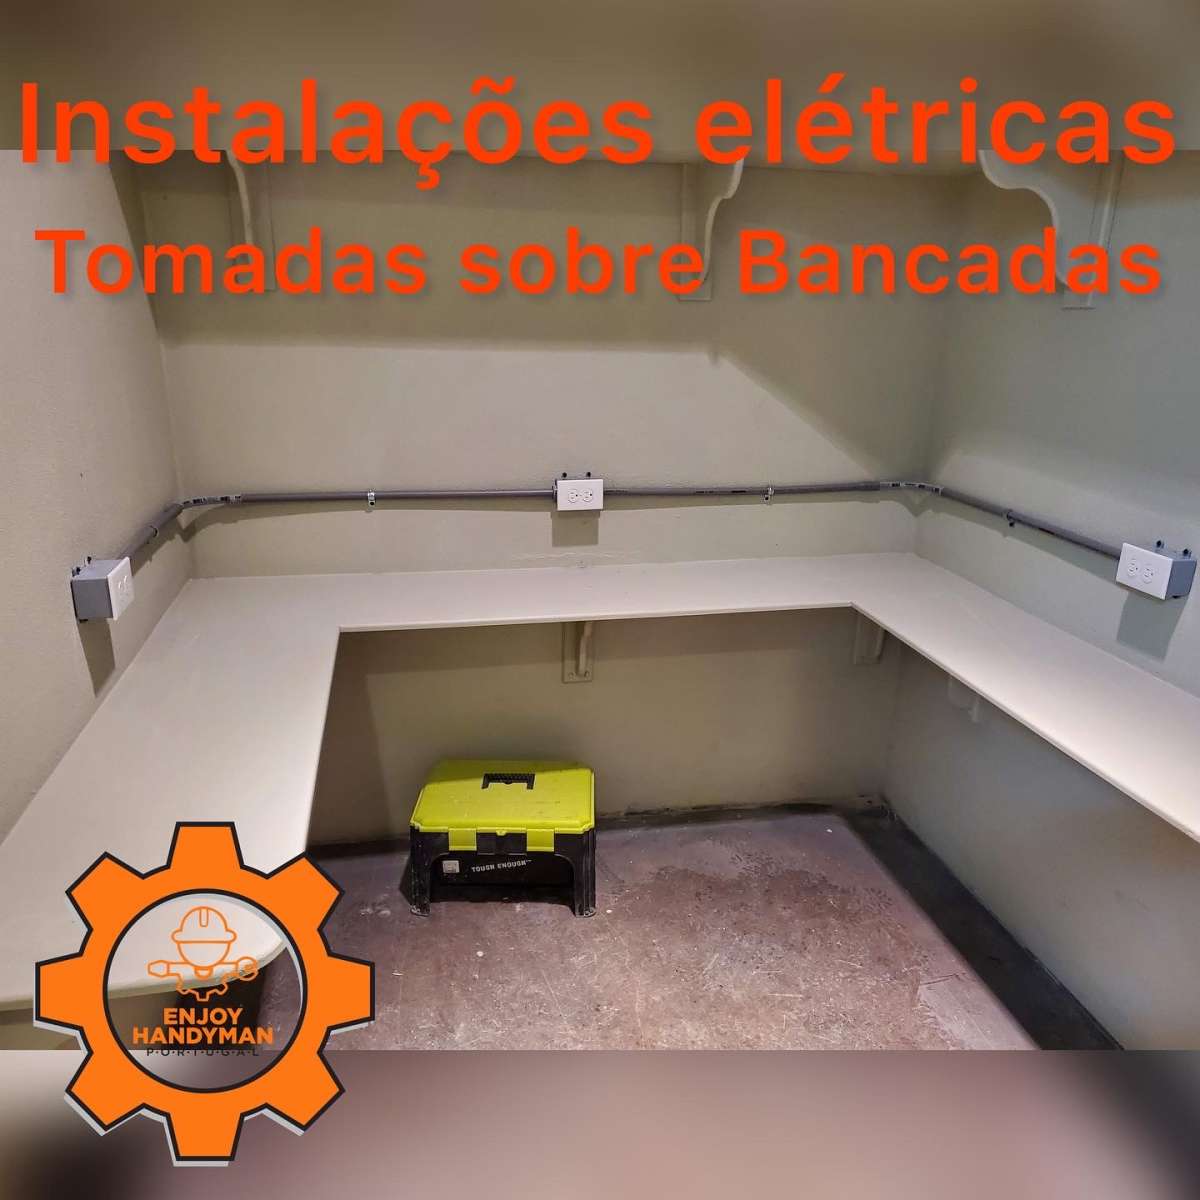 Enjoy Handyman Portugal (JorgeLuiz&EnedinnaSantos) - Vila Nova de Gaia - Reparação de Escadas e Escadarias